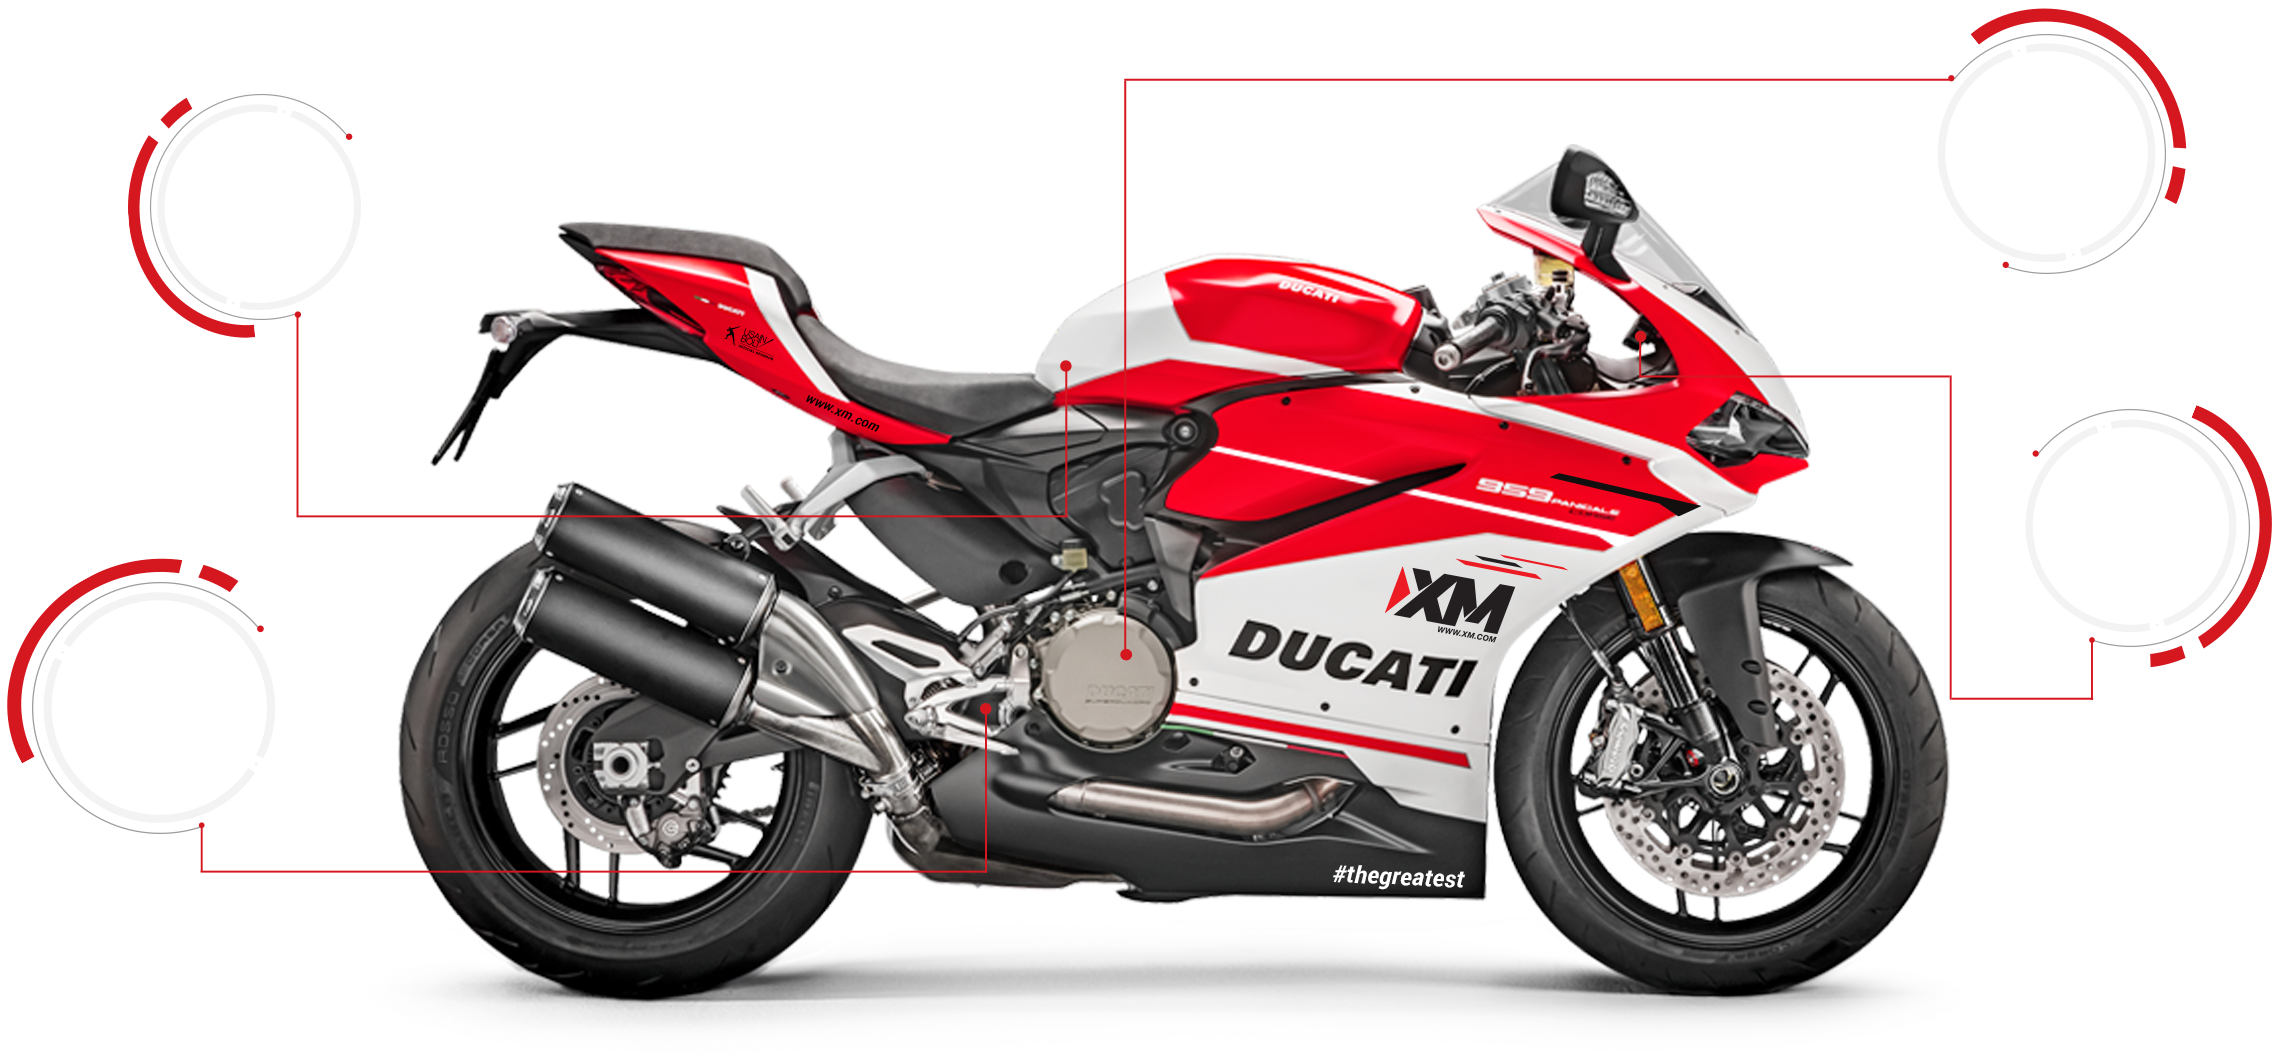 XM Ducati